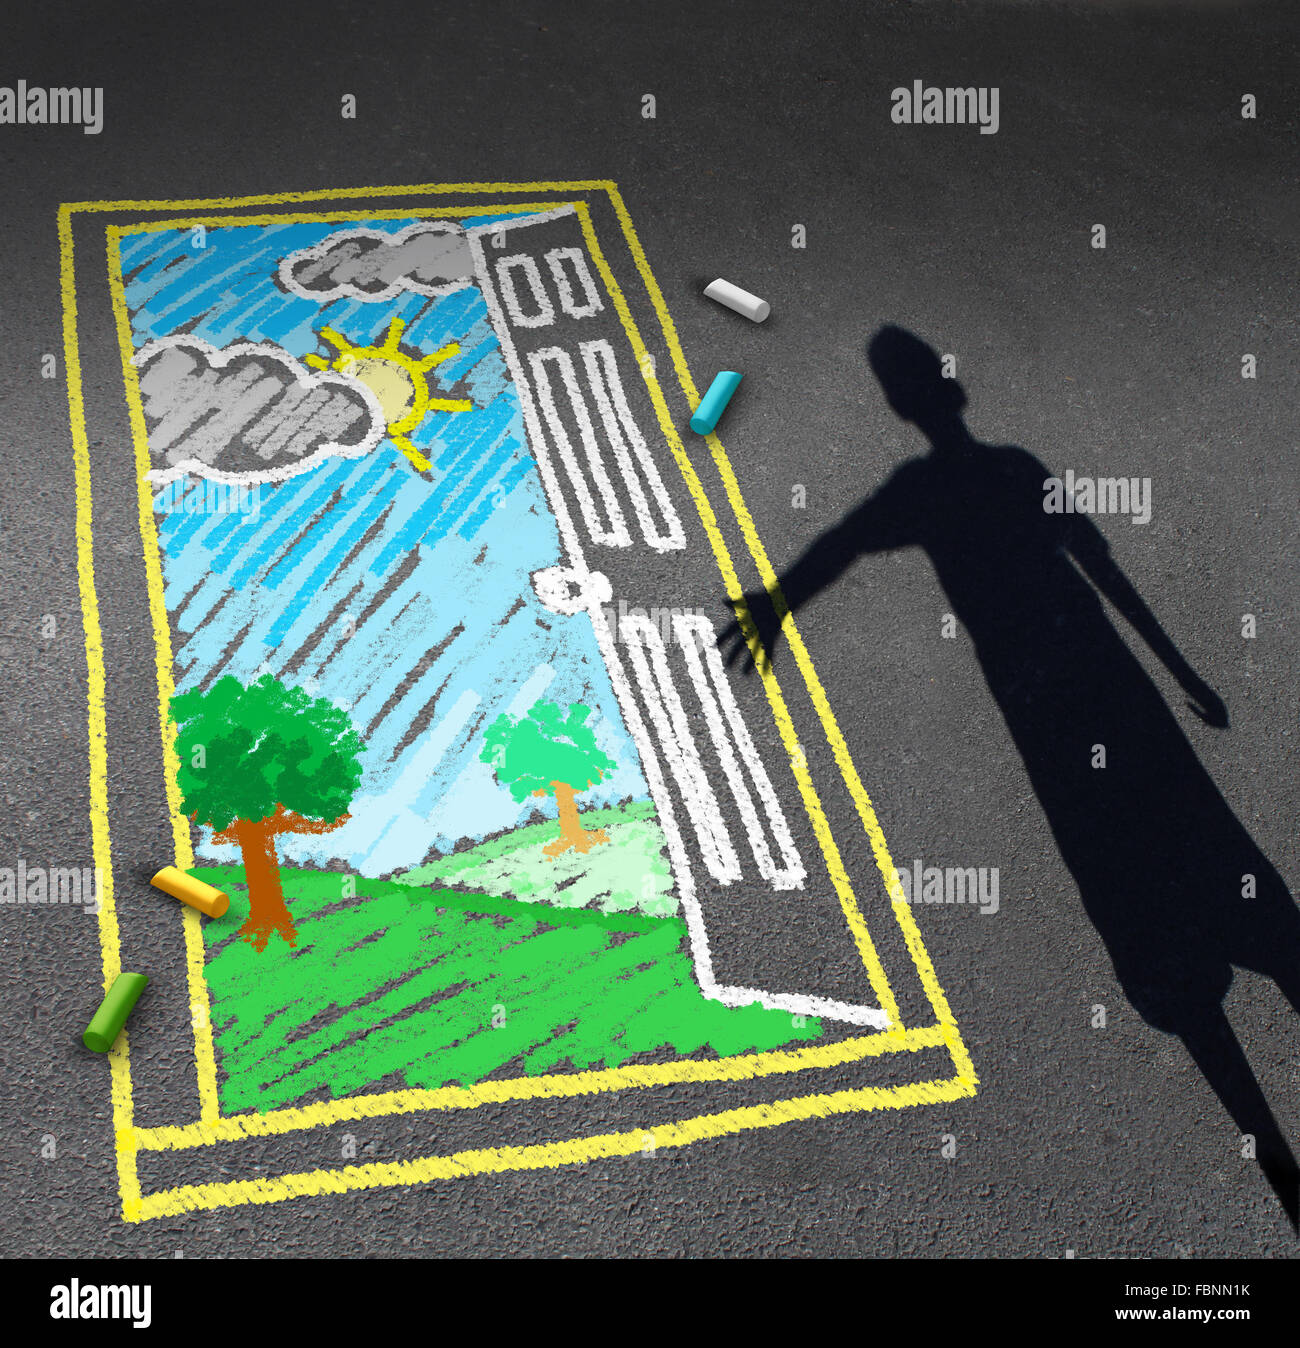 L'occasion de la petite enfance et de l'imagination de l'enfant concept symbole comme l'ombre d'un garçon à la recherche vers le bas sur un trottoir avec un dessin à la craie Banque D'Images